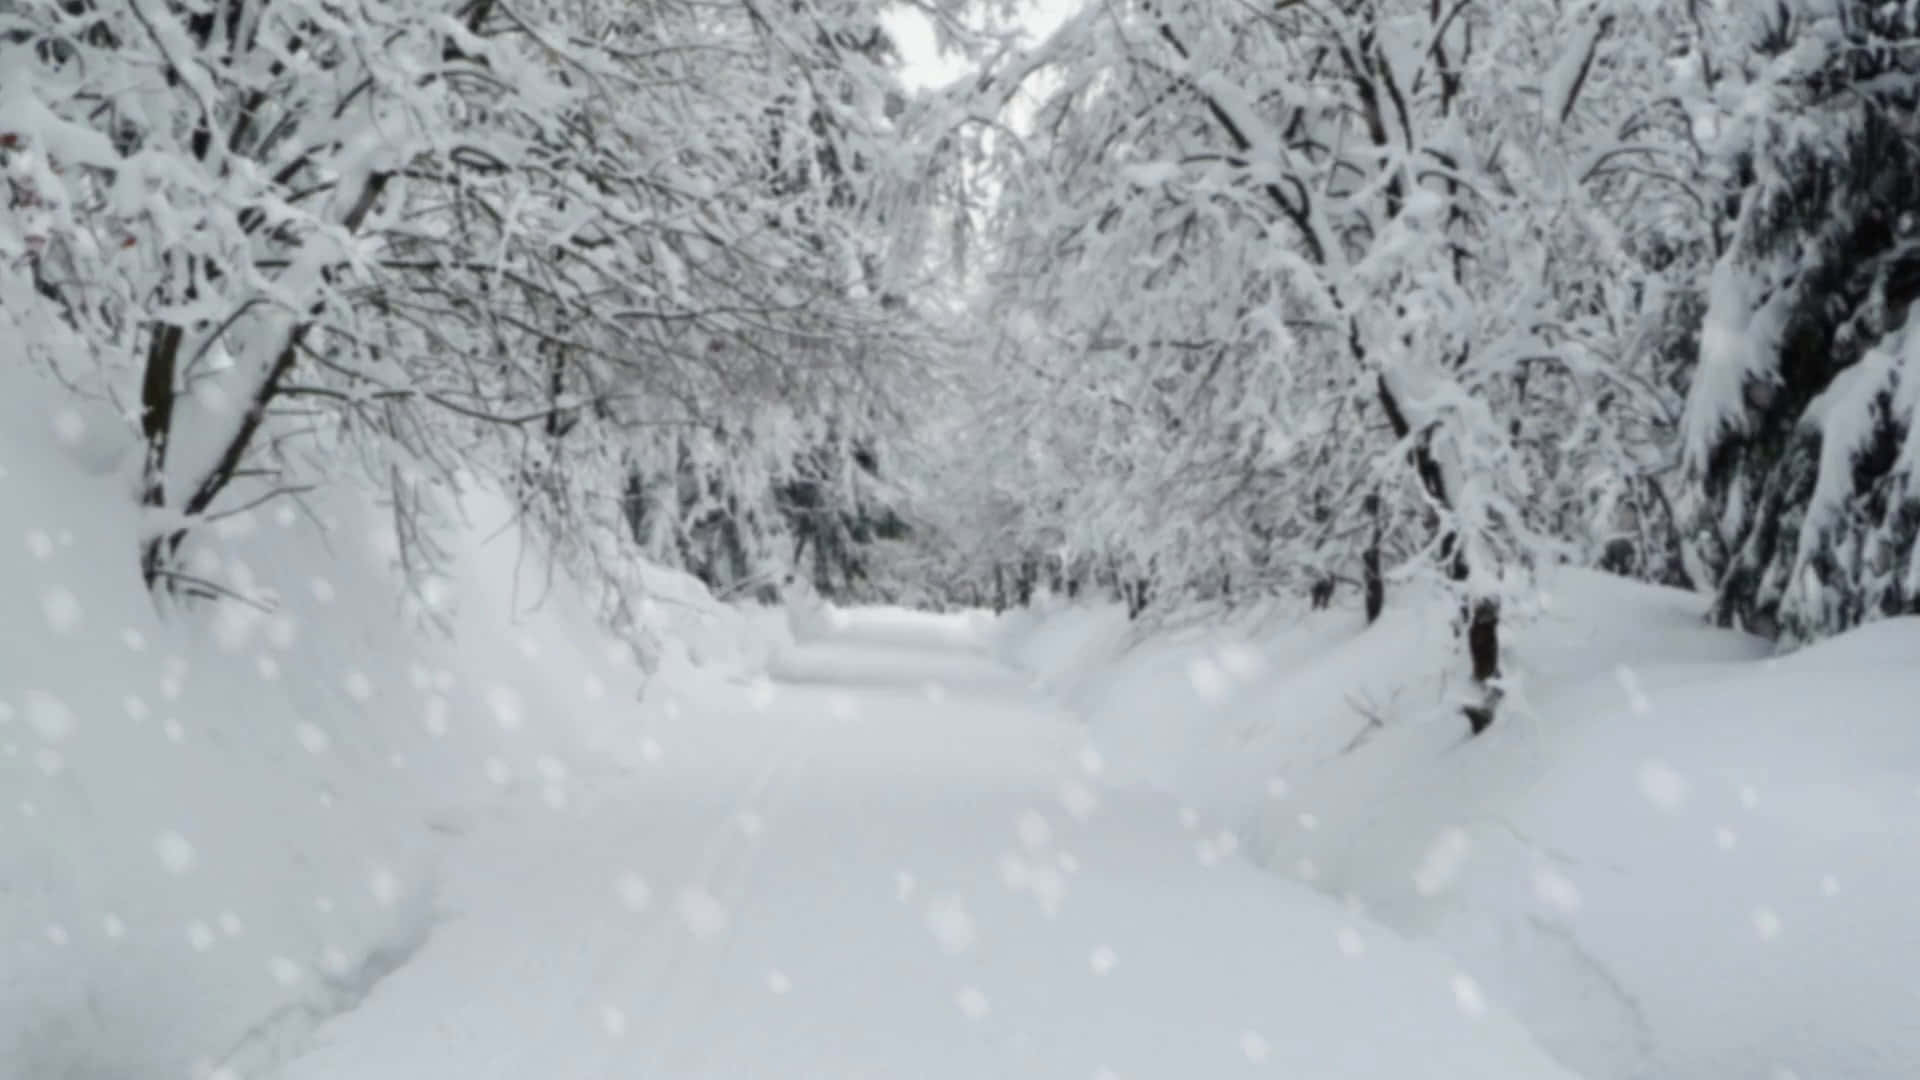 Caminocubierto De Nieve En Un Fondo De Bosque